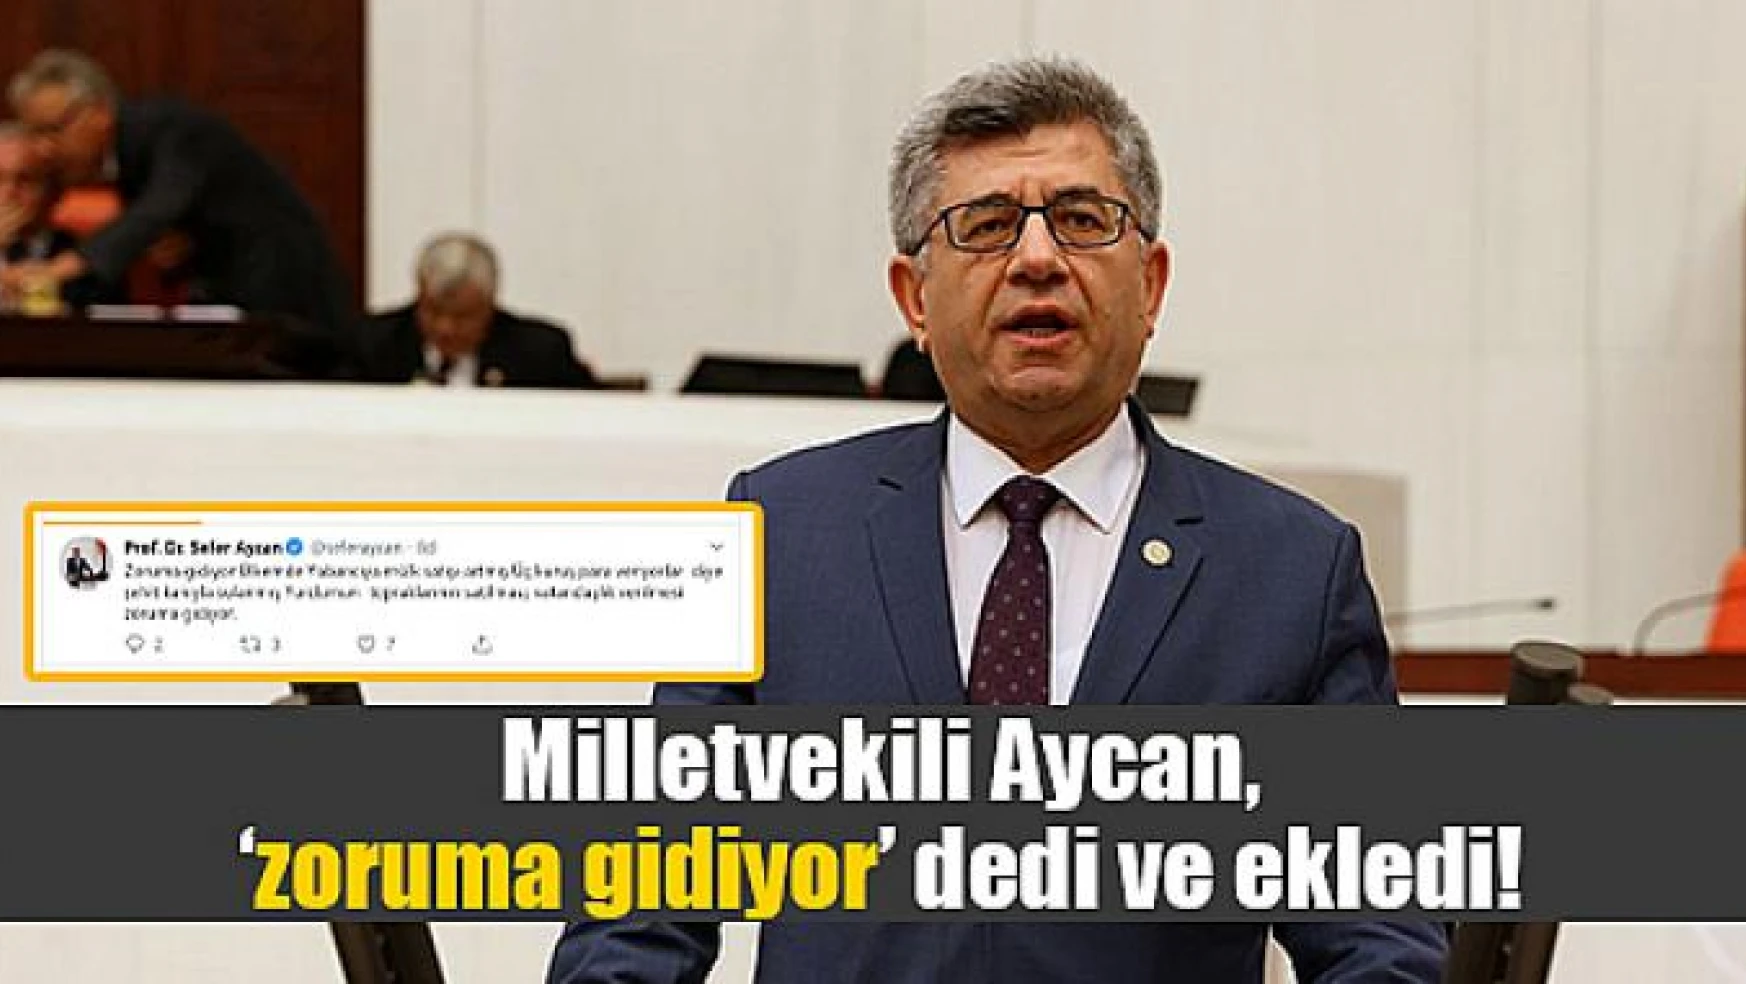 Milletvekili Aycan, 'zoruma gidiyor' dedi ve ekledi!